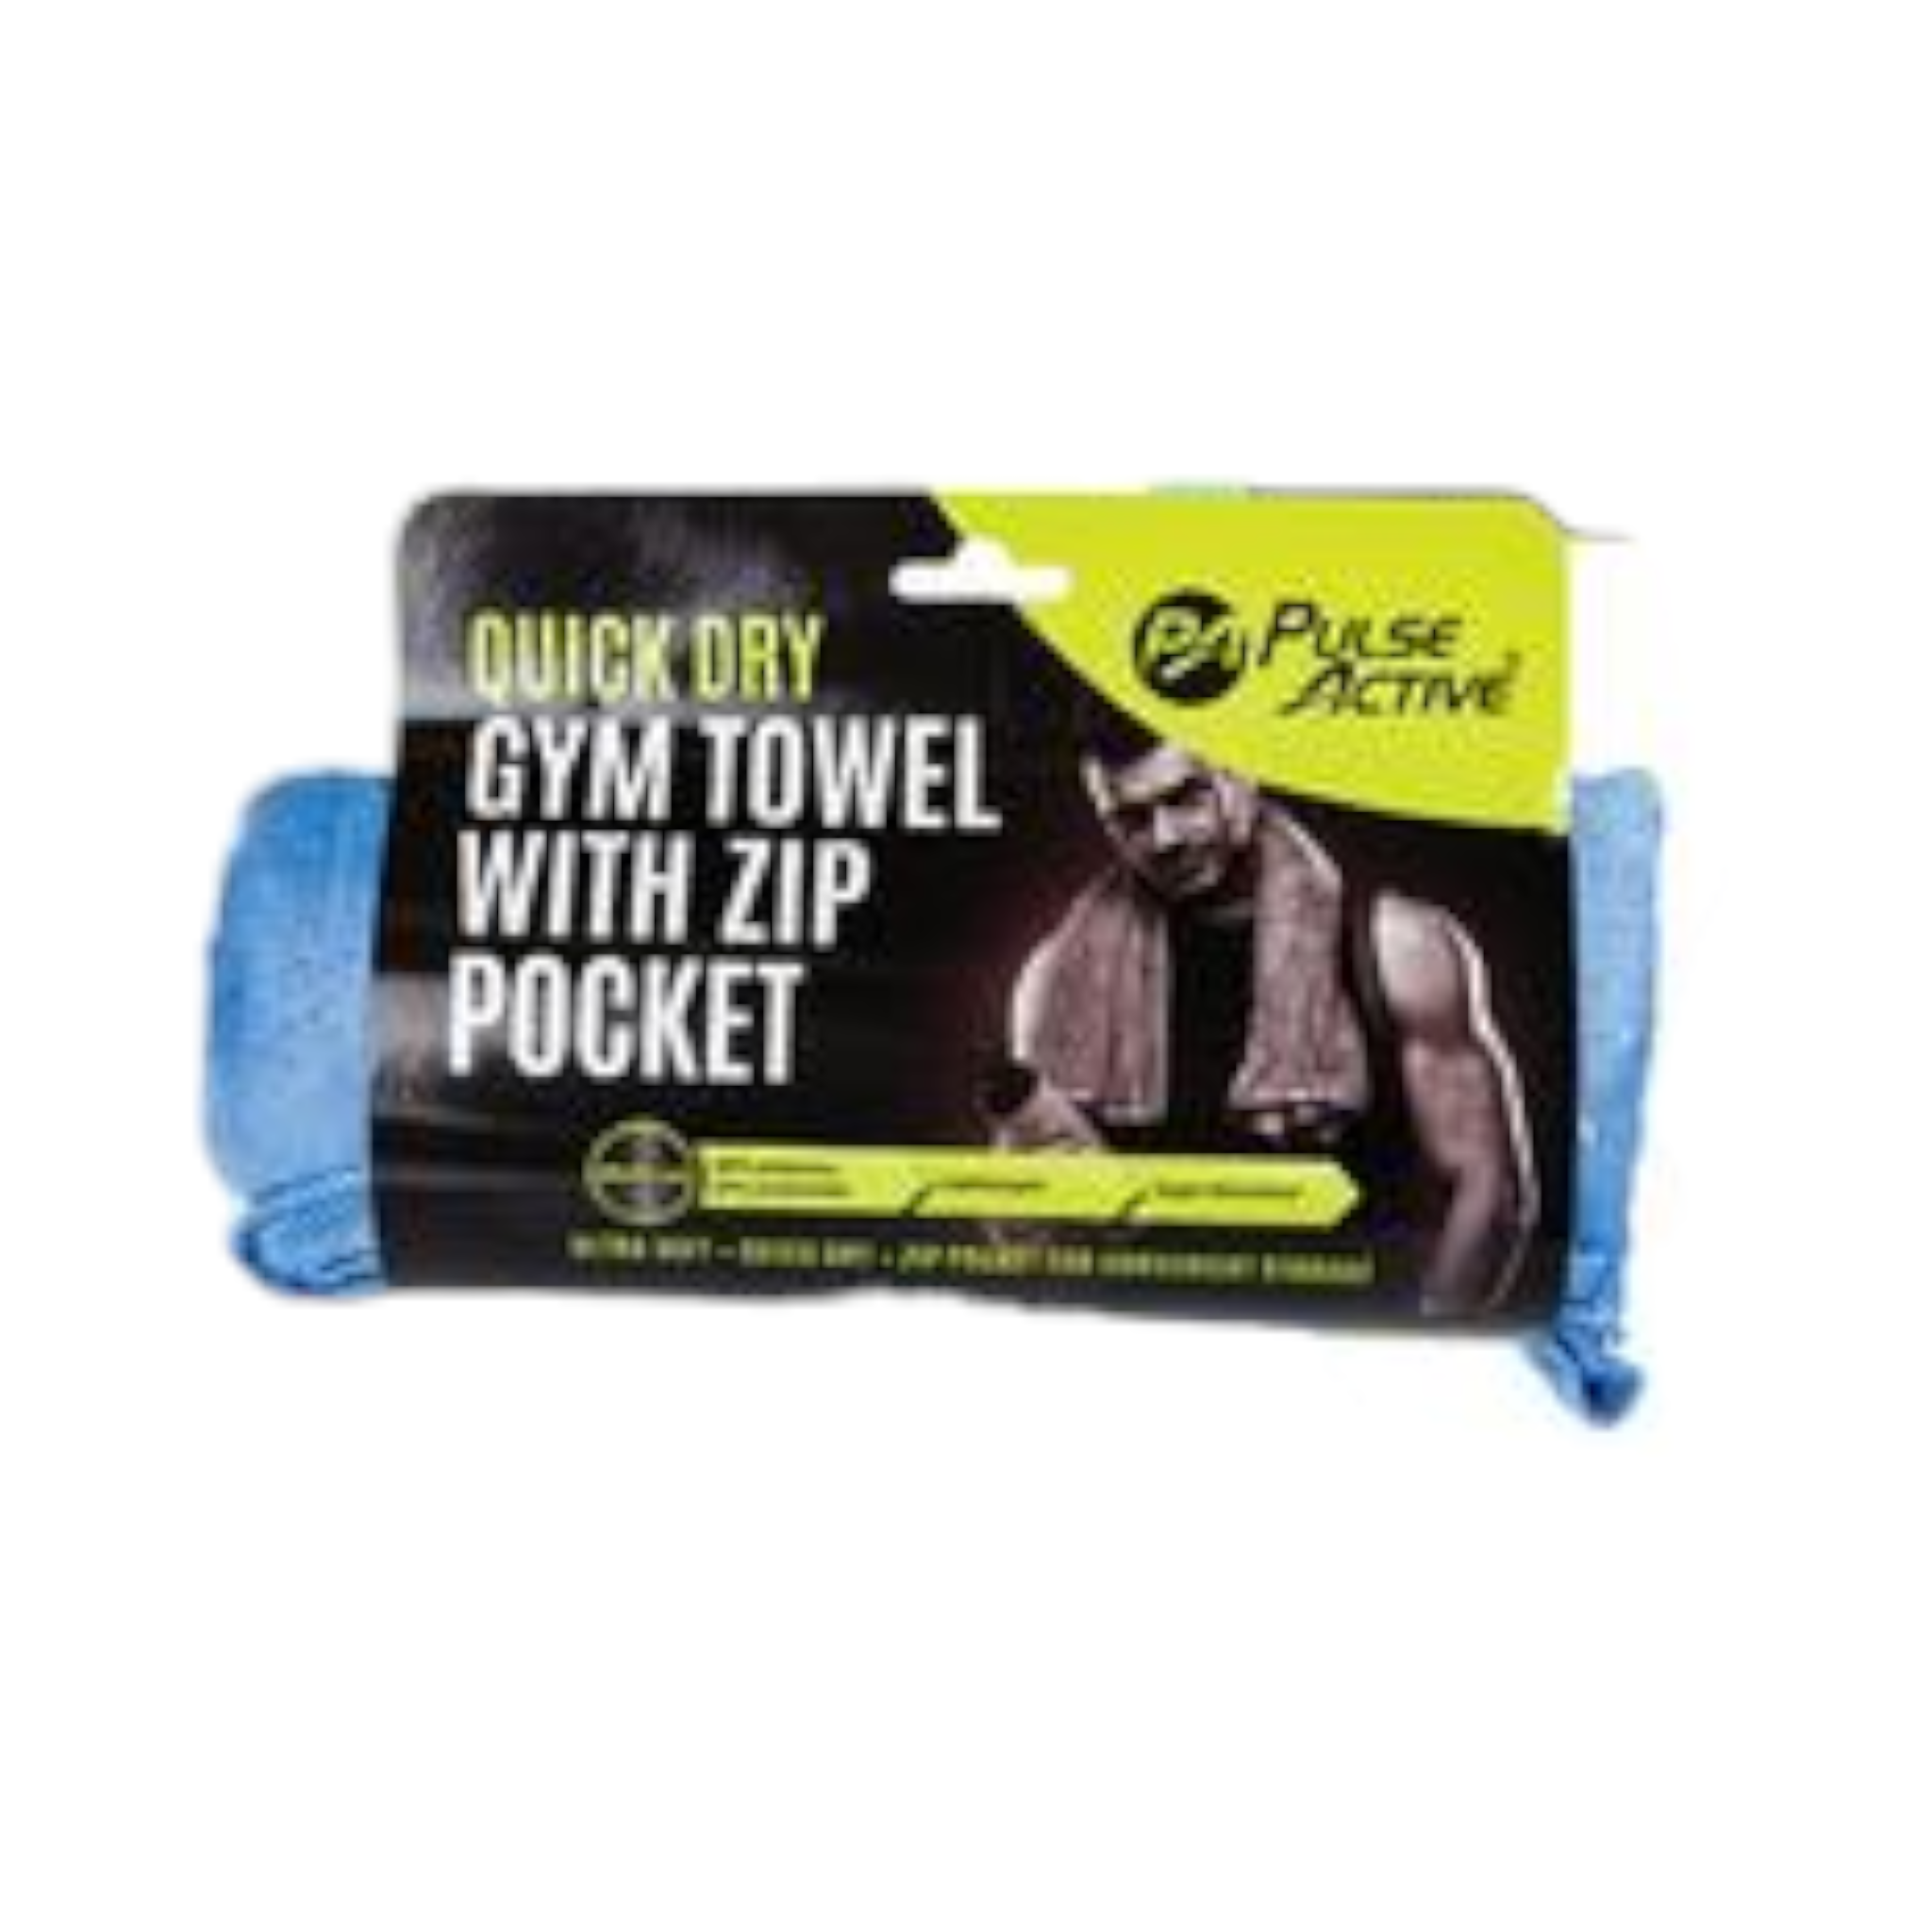 Fitness Gym Towel with Zip Pocket 40x90cm